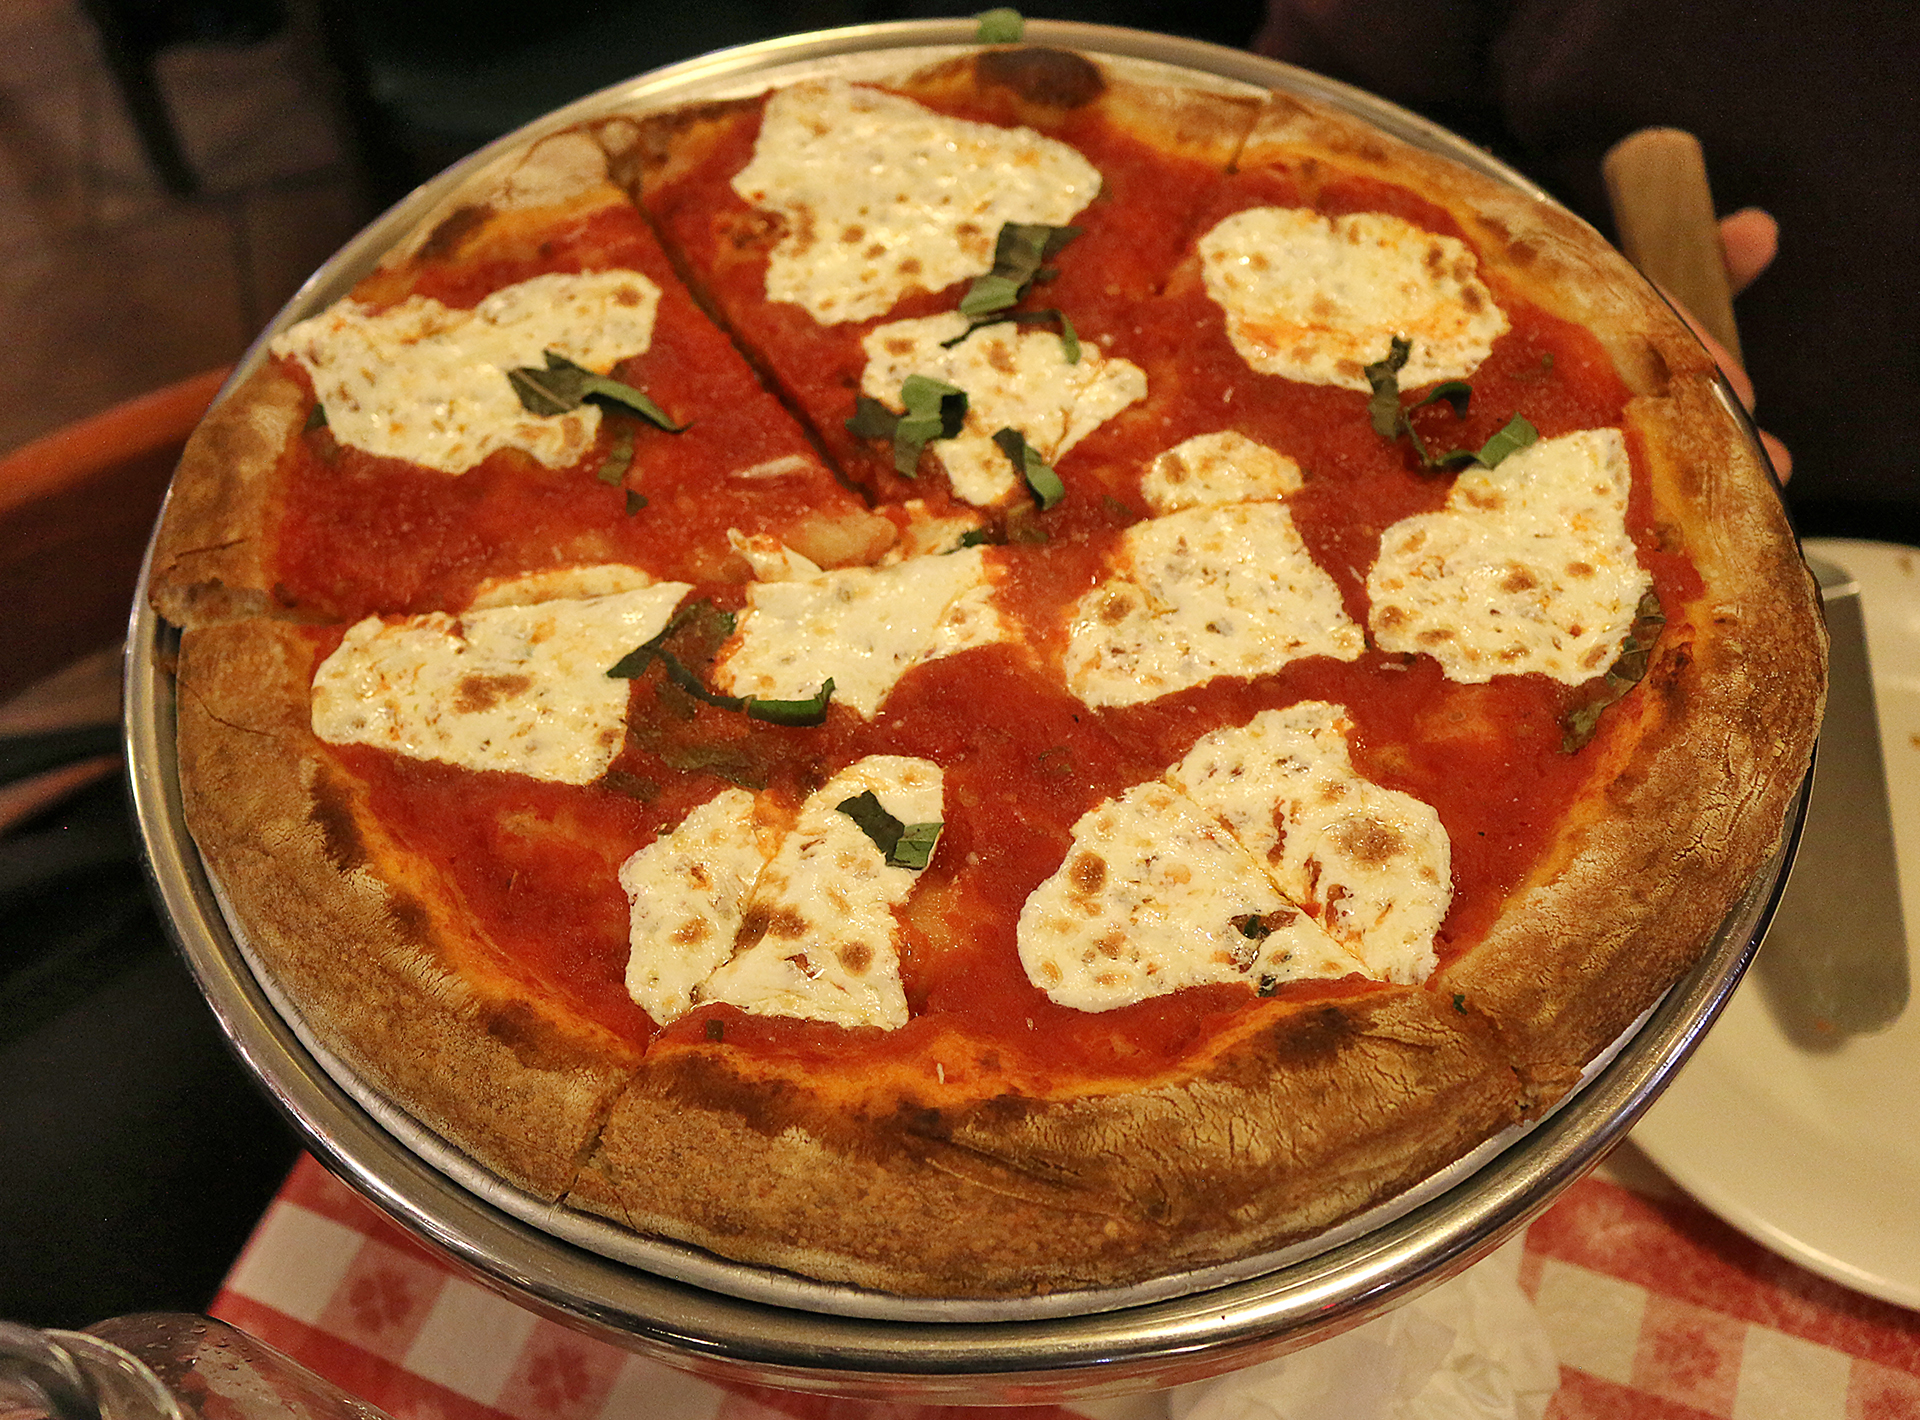 Lombardi’s pizza